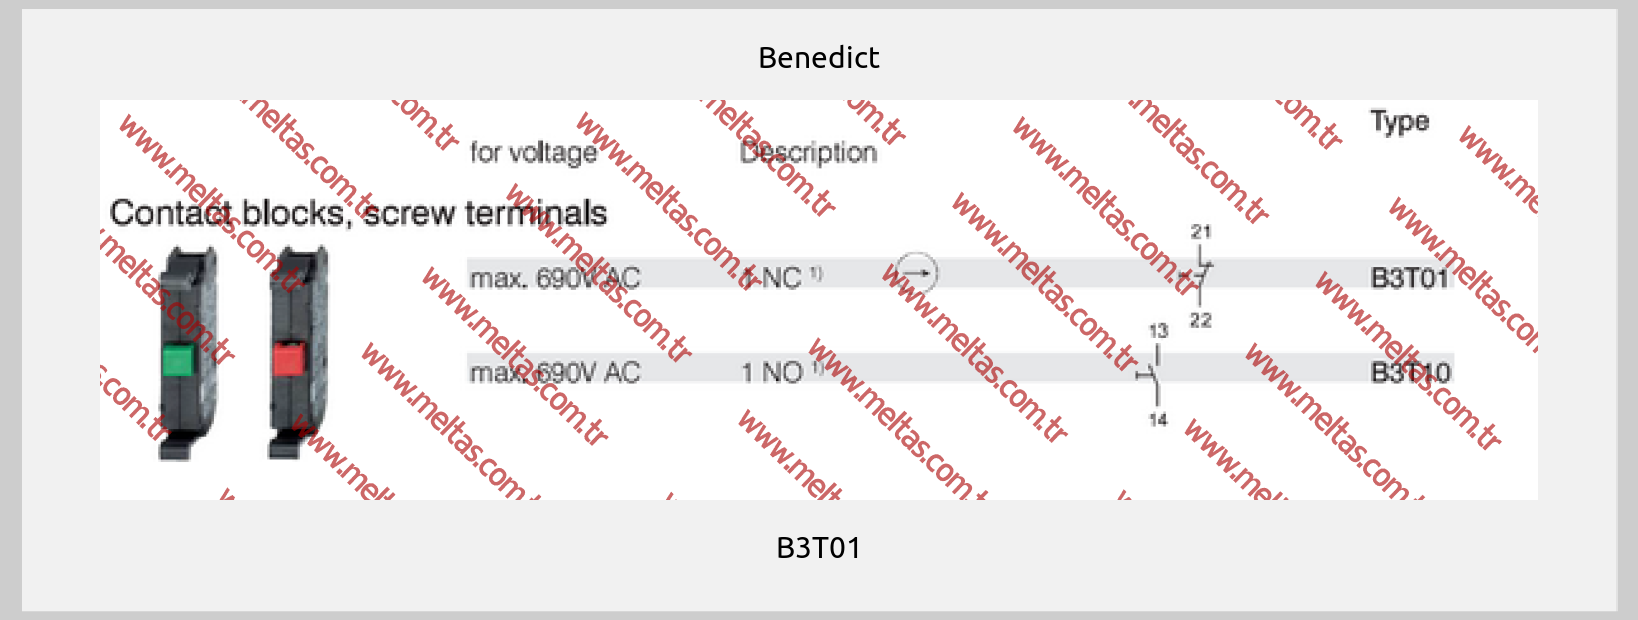 Benedict - B3T01